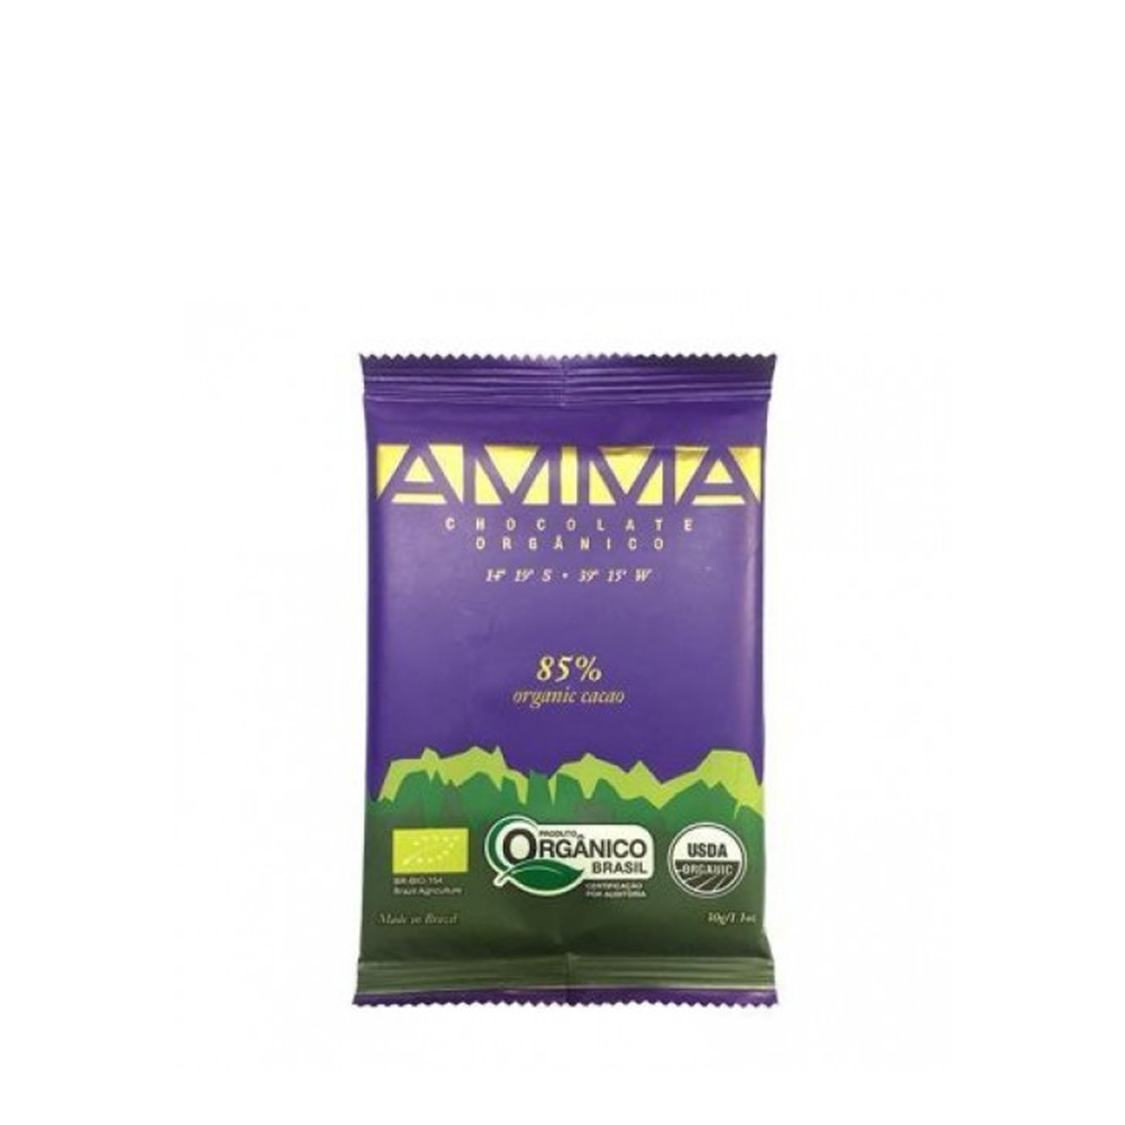 Chocolate 85% (30g) – Amma